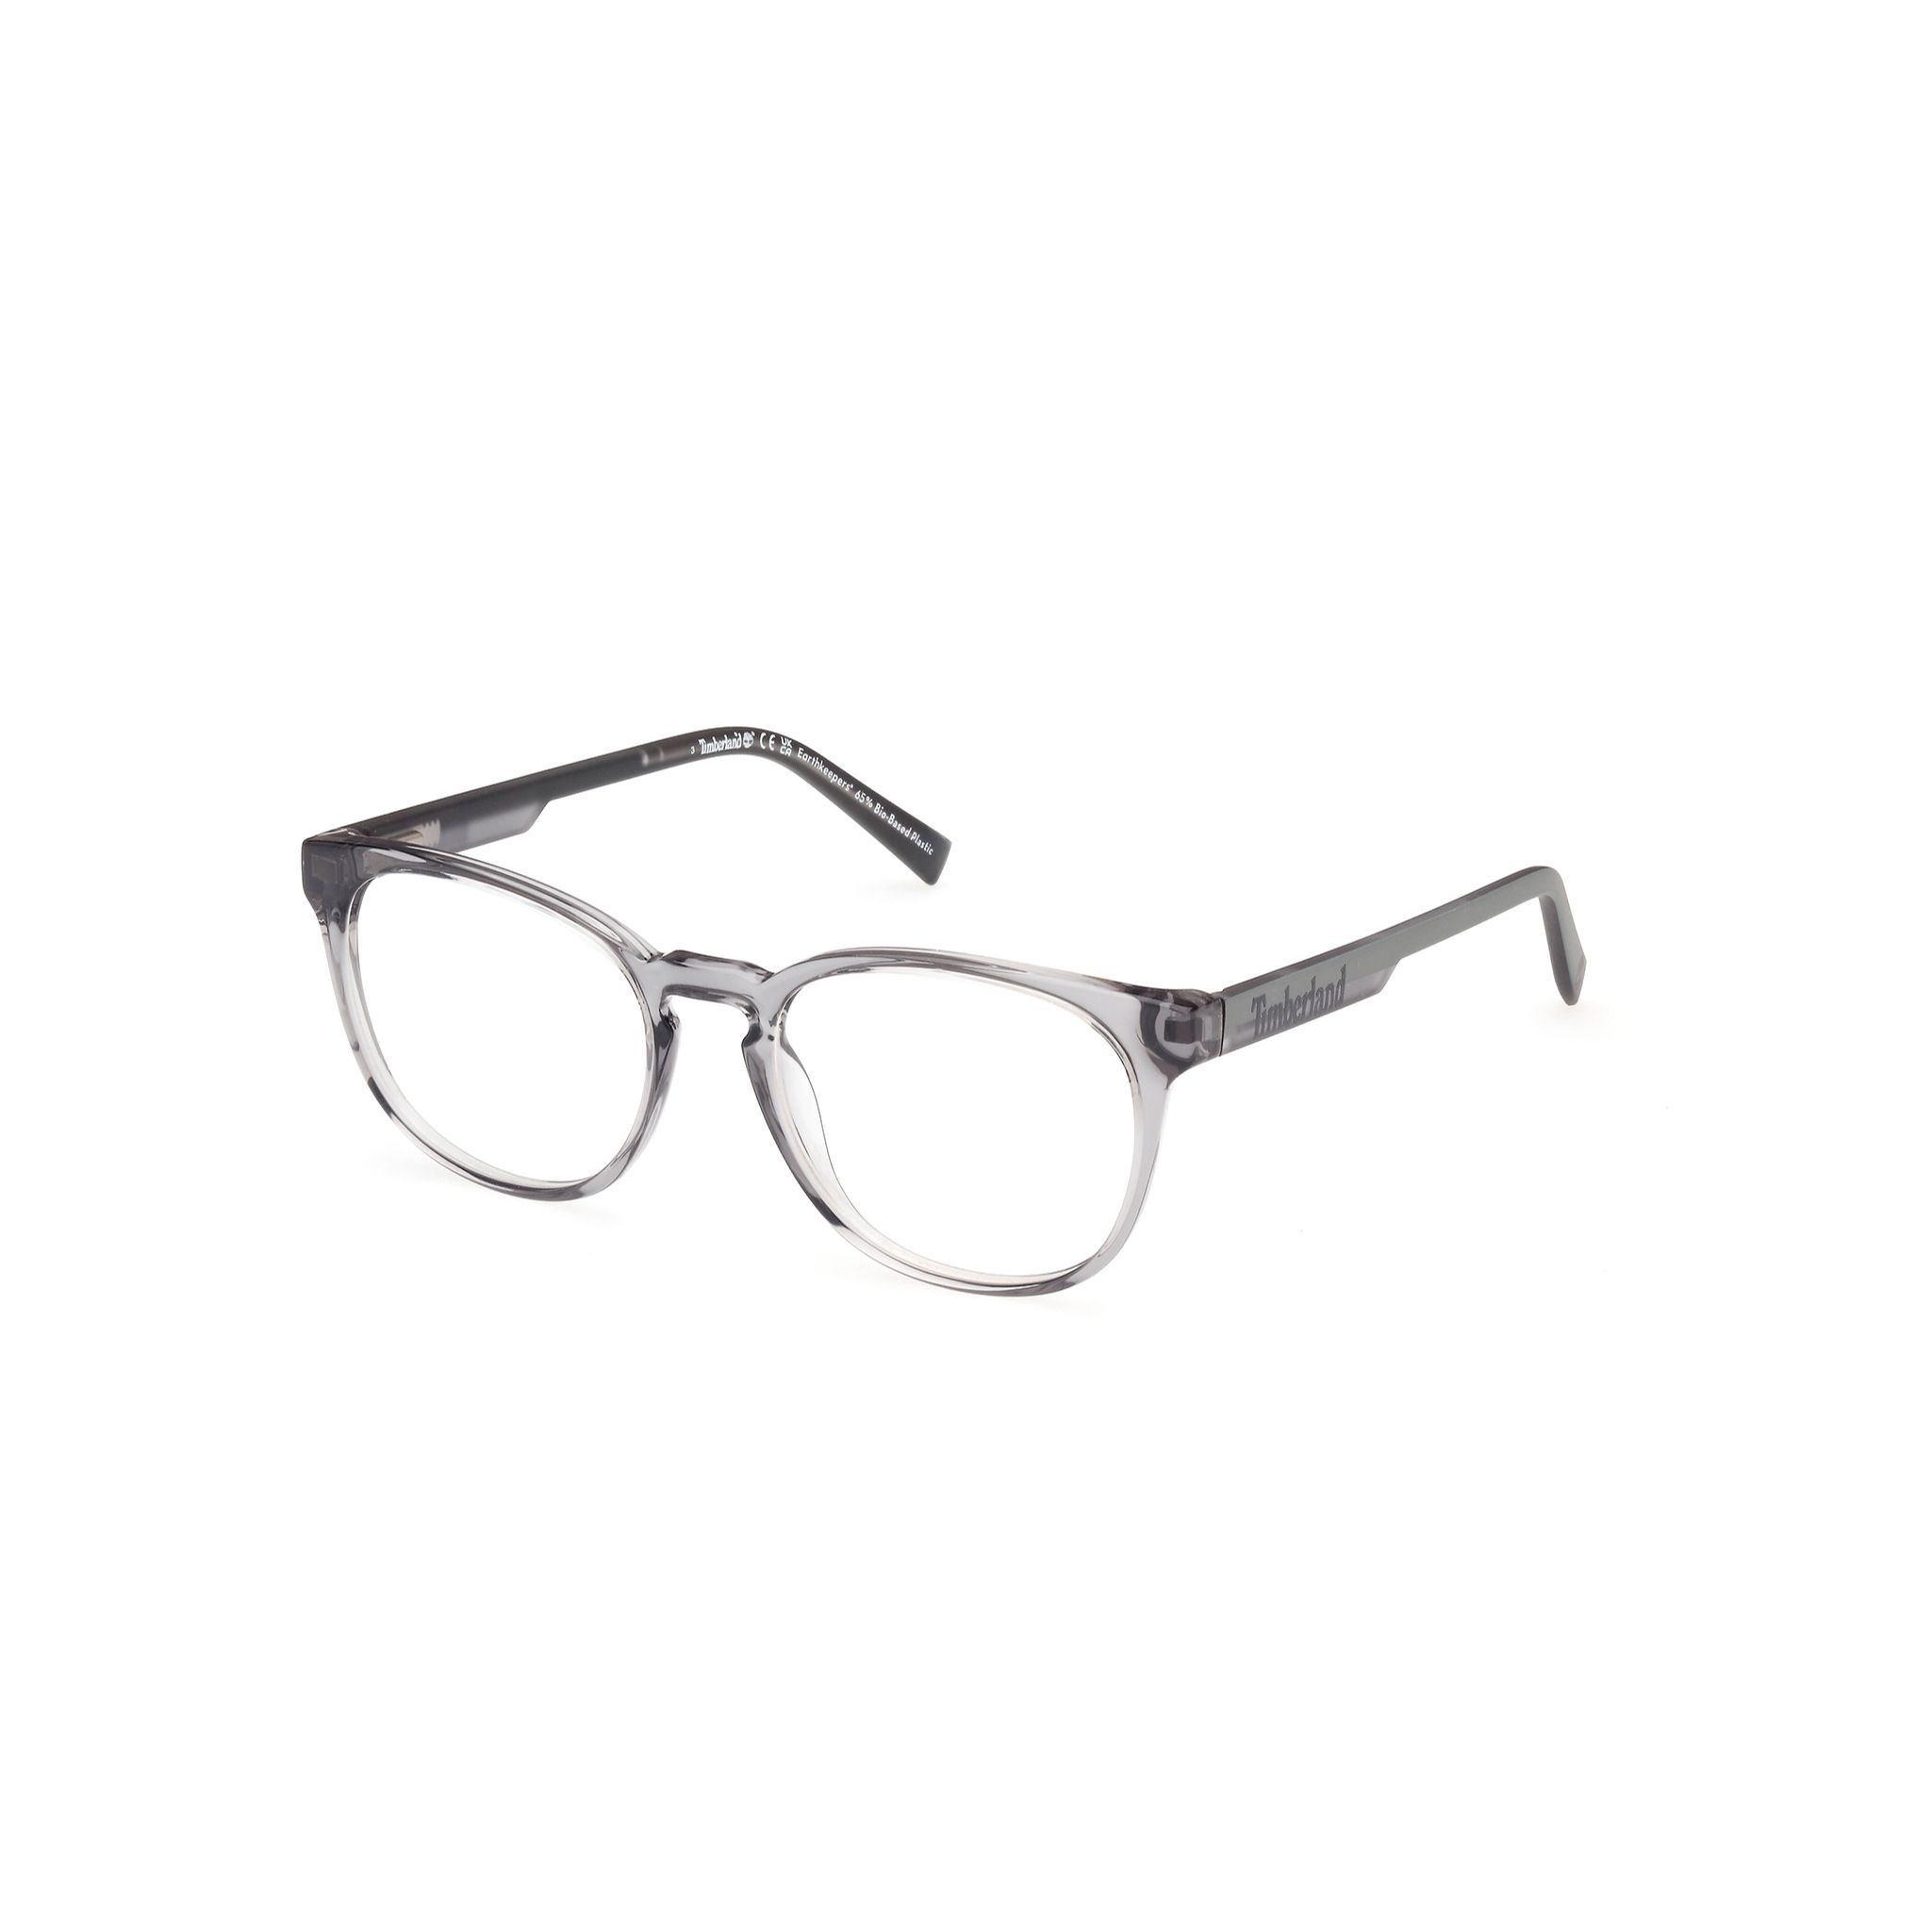 TB50013 Round Eyeglasses 020 - size 50